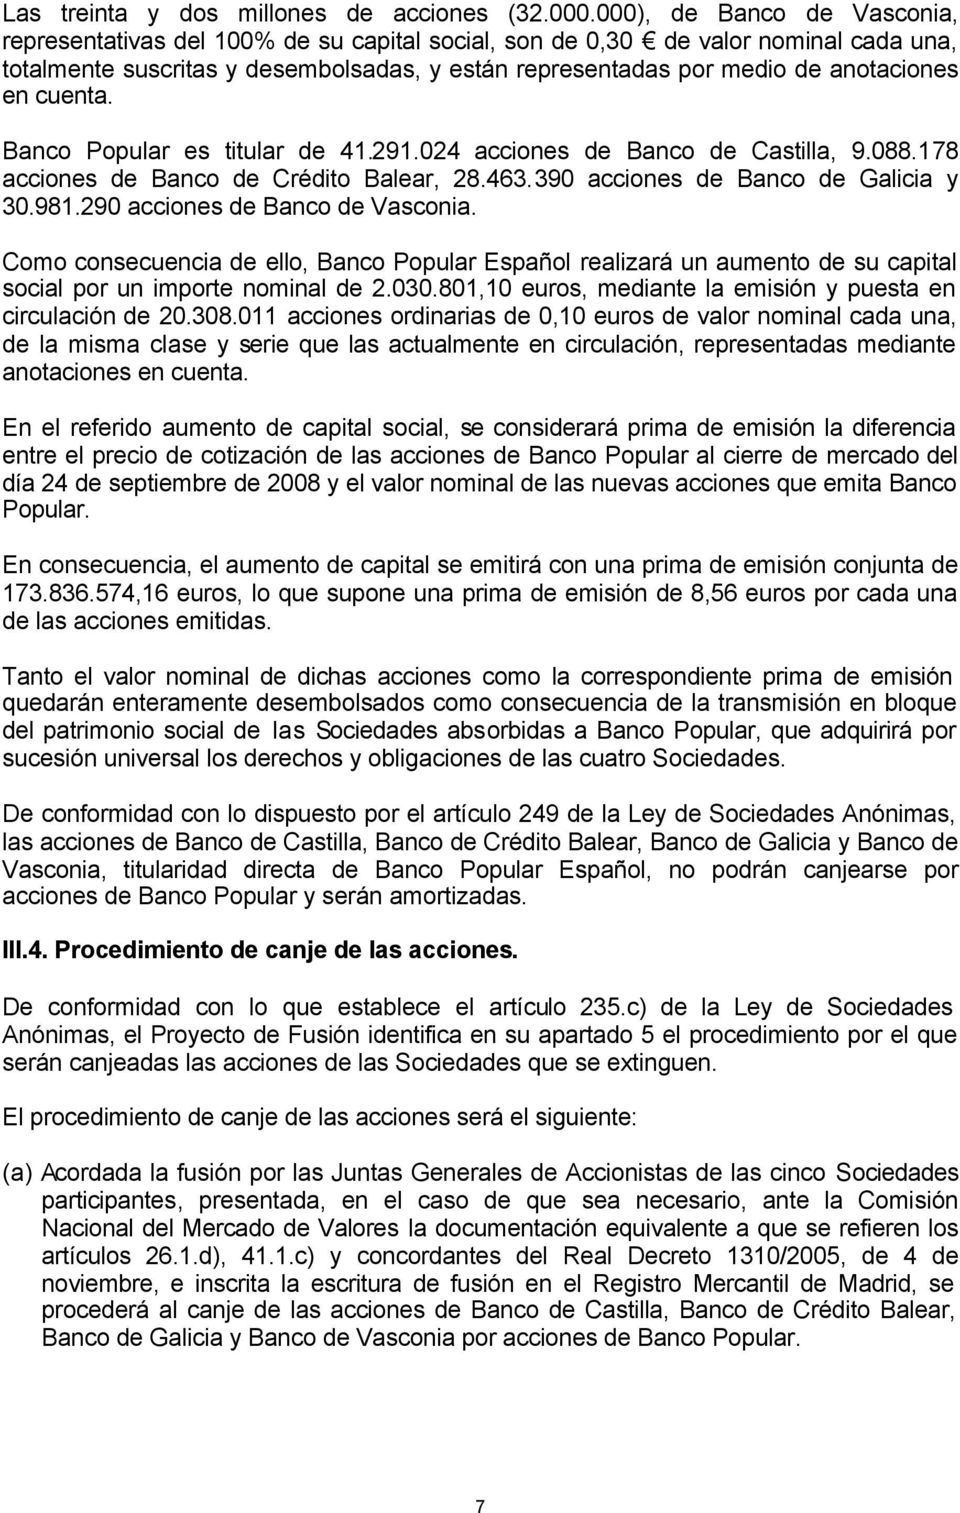 en cuenta. Banco Popular es titular de 41.291.024 acciones de Banco de Castilla, 9.088.178 acciones de Banco de Crédito Balear, 28.463.390 acciones de Banco de Galicia y 30.981.